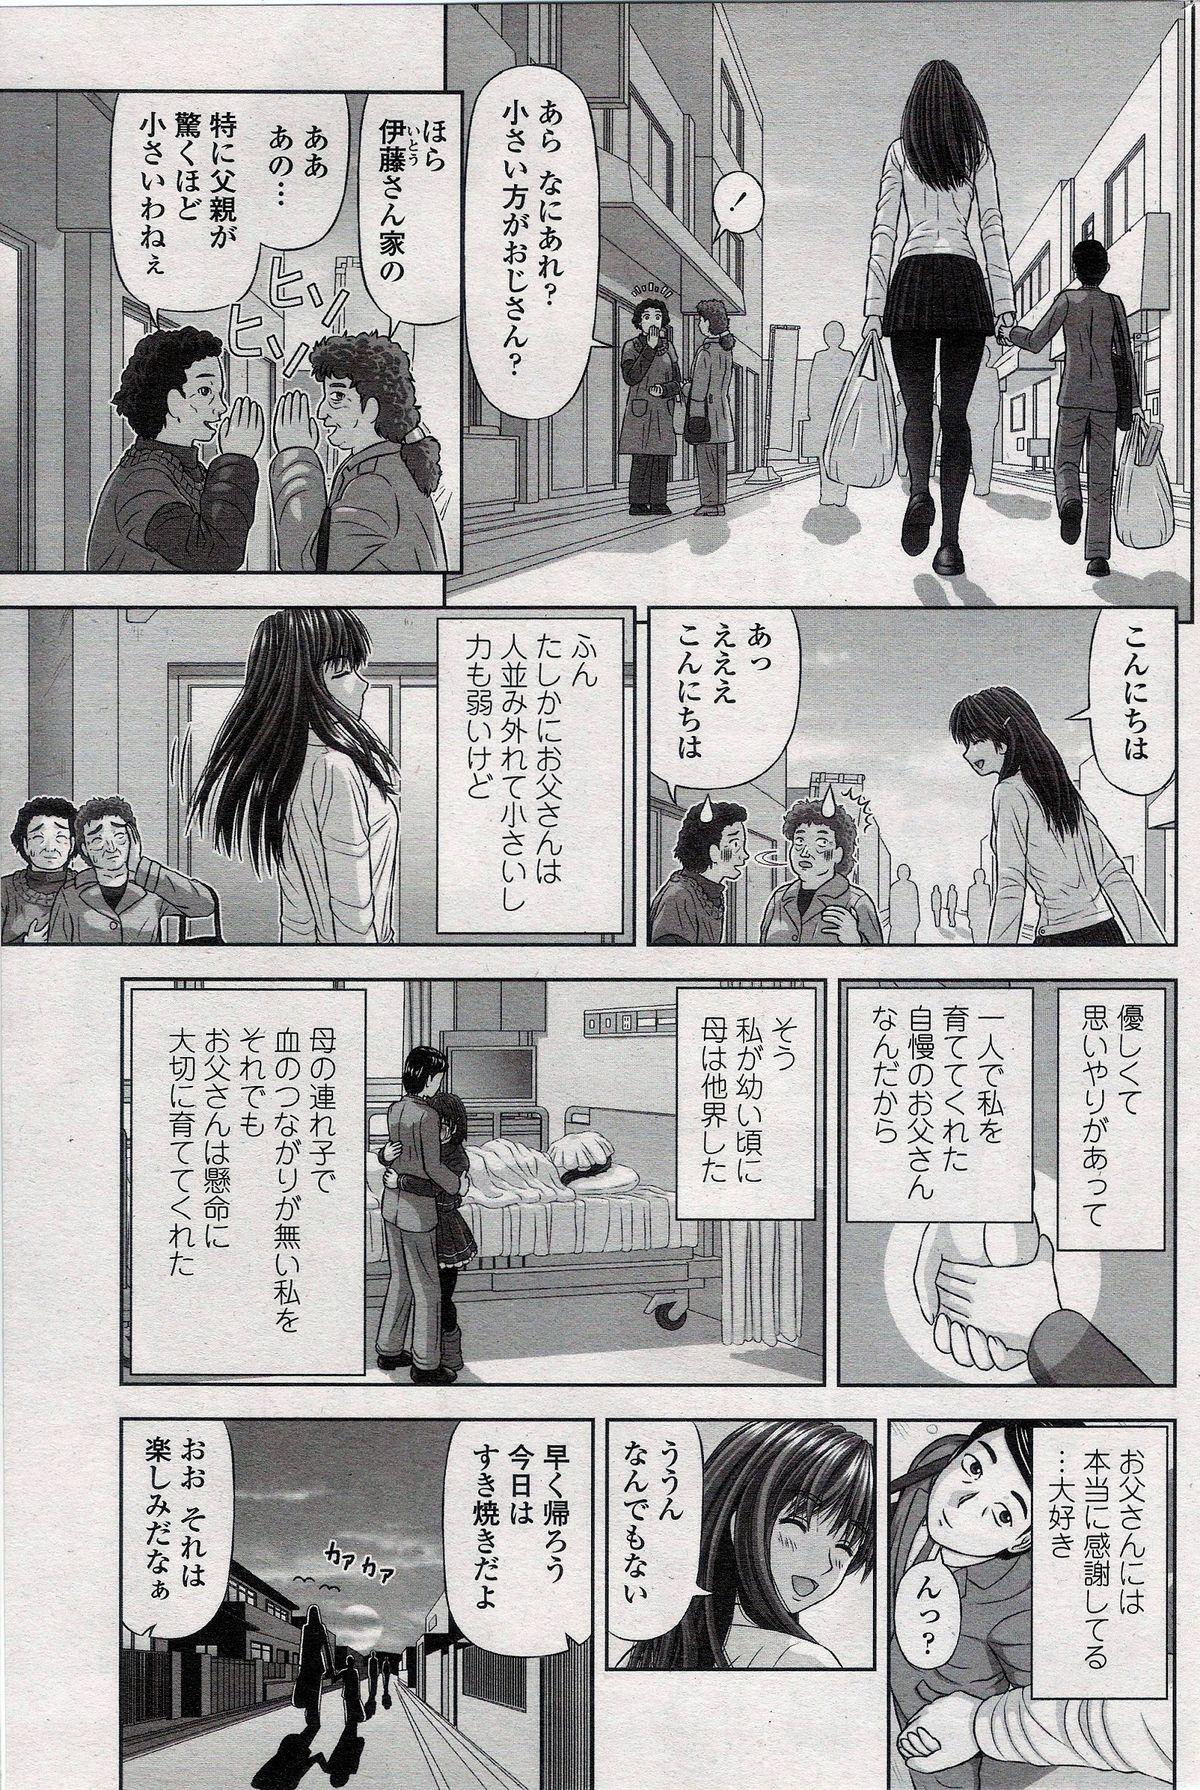 Long Hair Mana-Musume Playing - Page 5